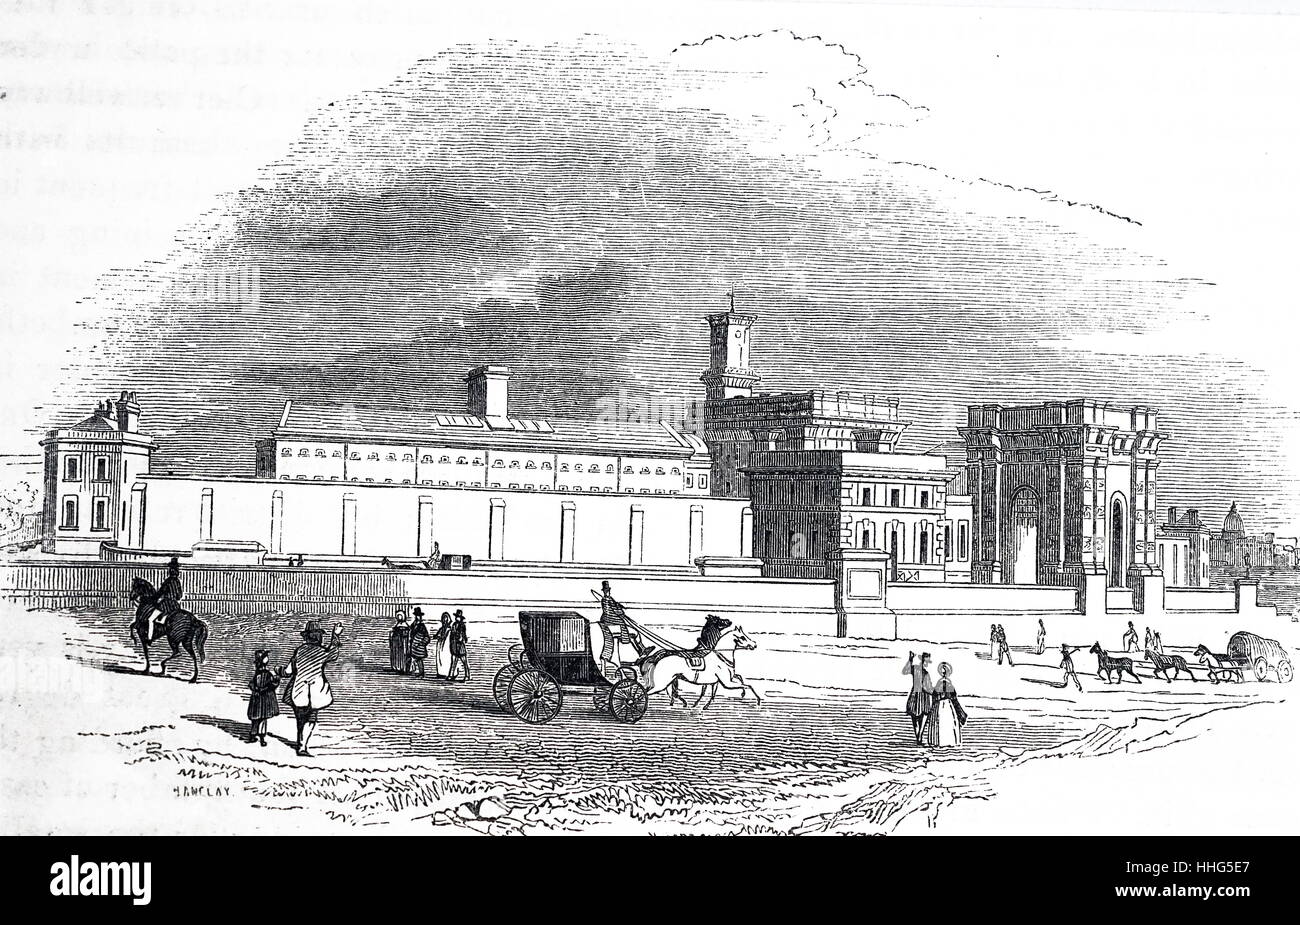 Prison modèle sur le système séparé - Pentonville. Daté de septembre 1843 Banque D'Images